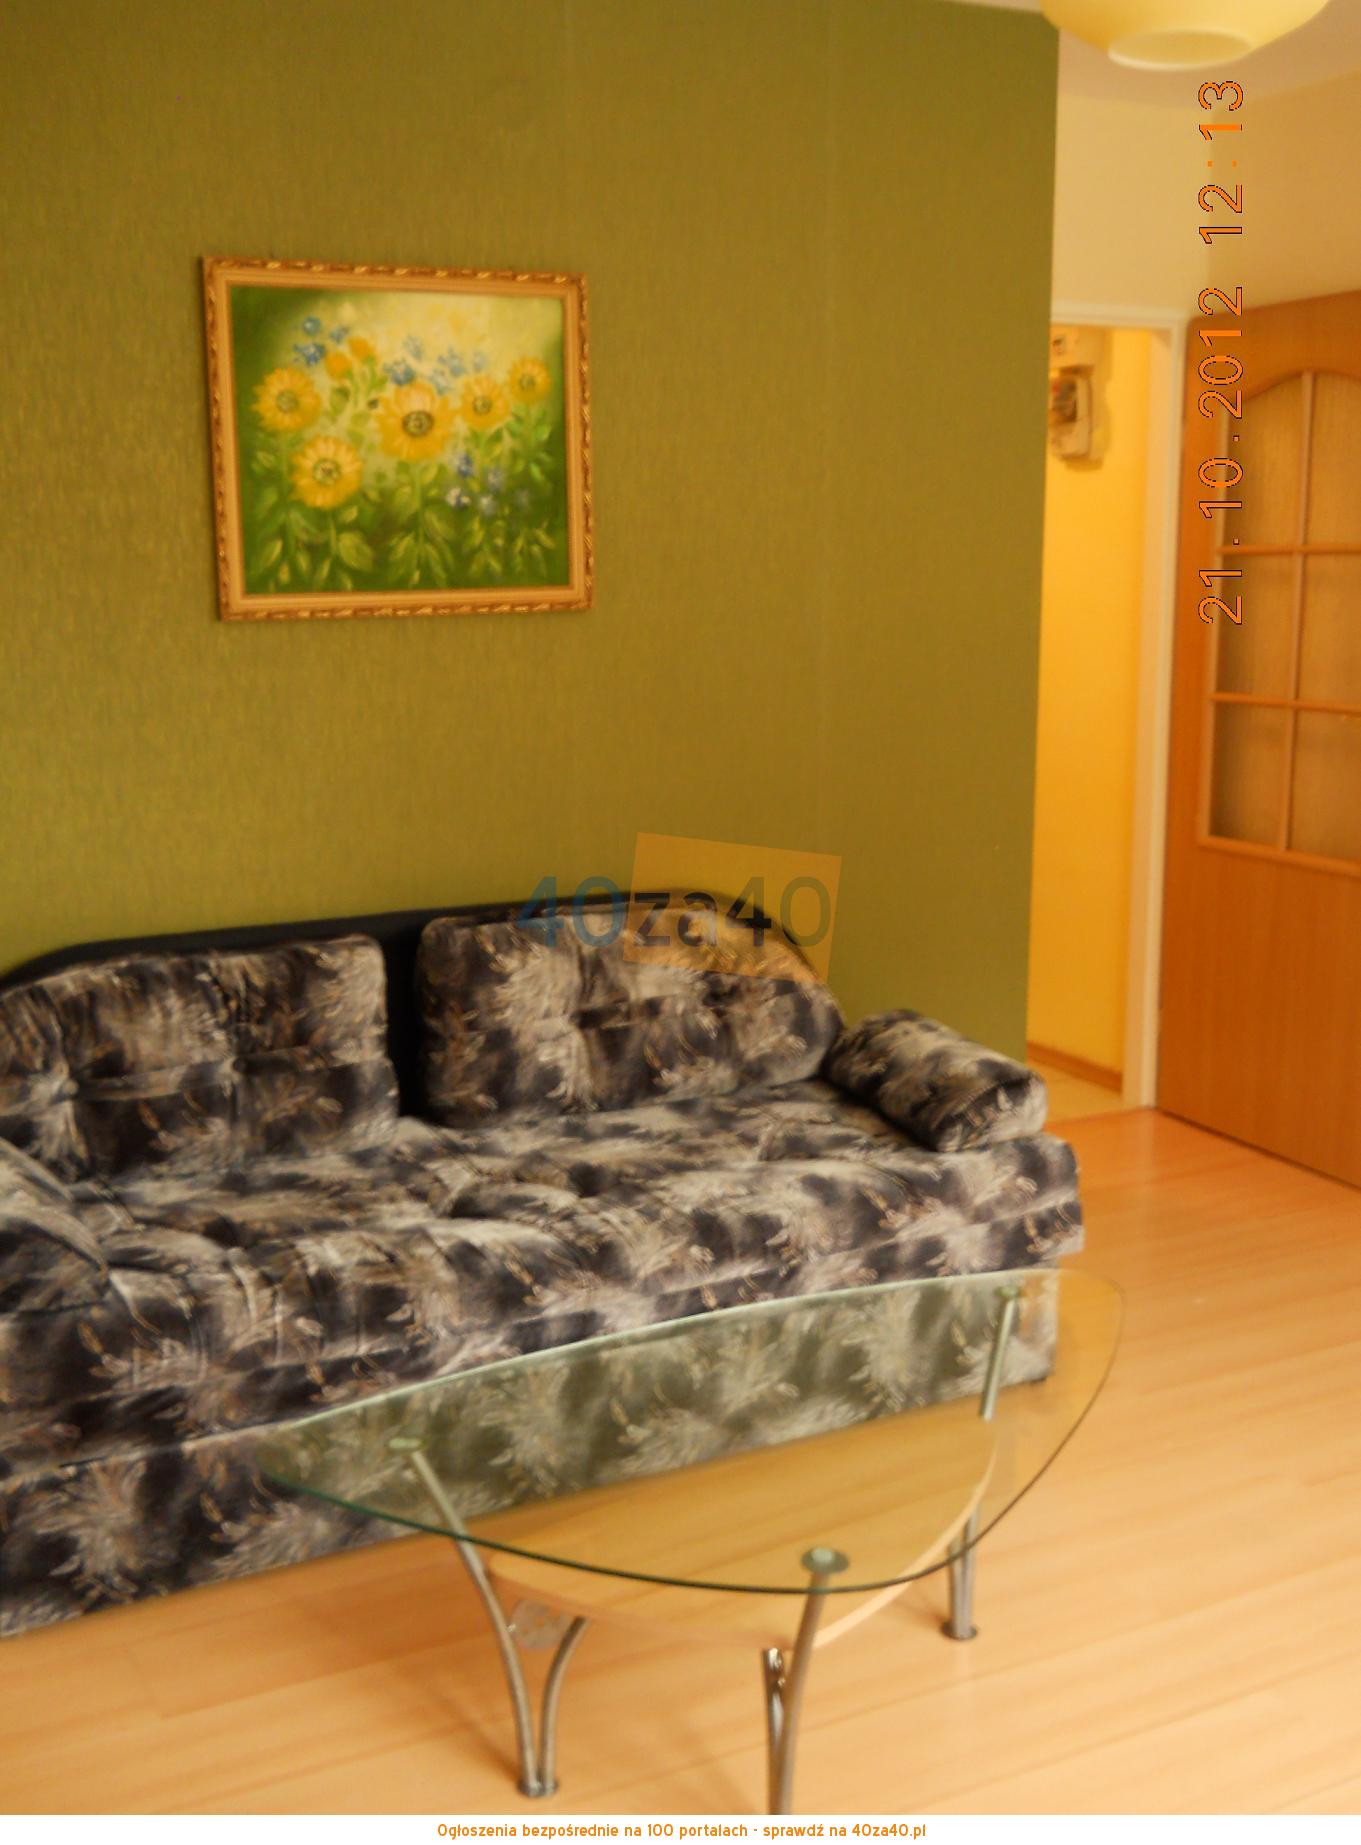 Mieszkanie do wynajęcia, pokoje: 1, cena: 25,00 PLN, Świnoujście, kontakt: 600047527